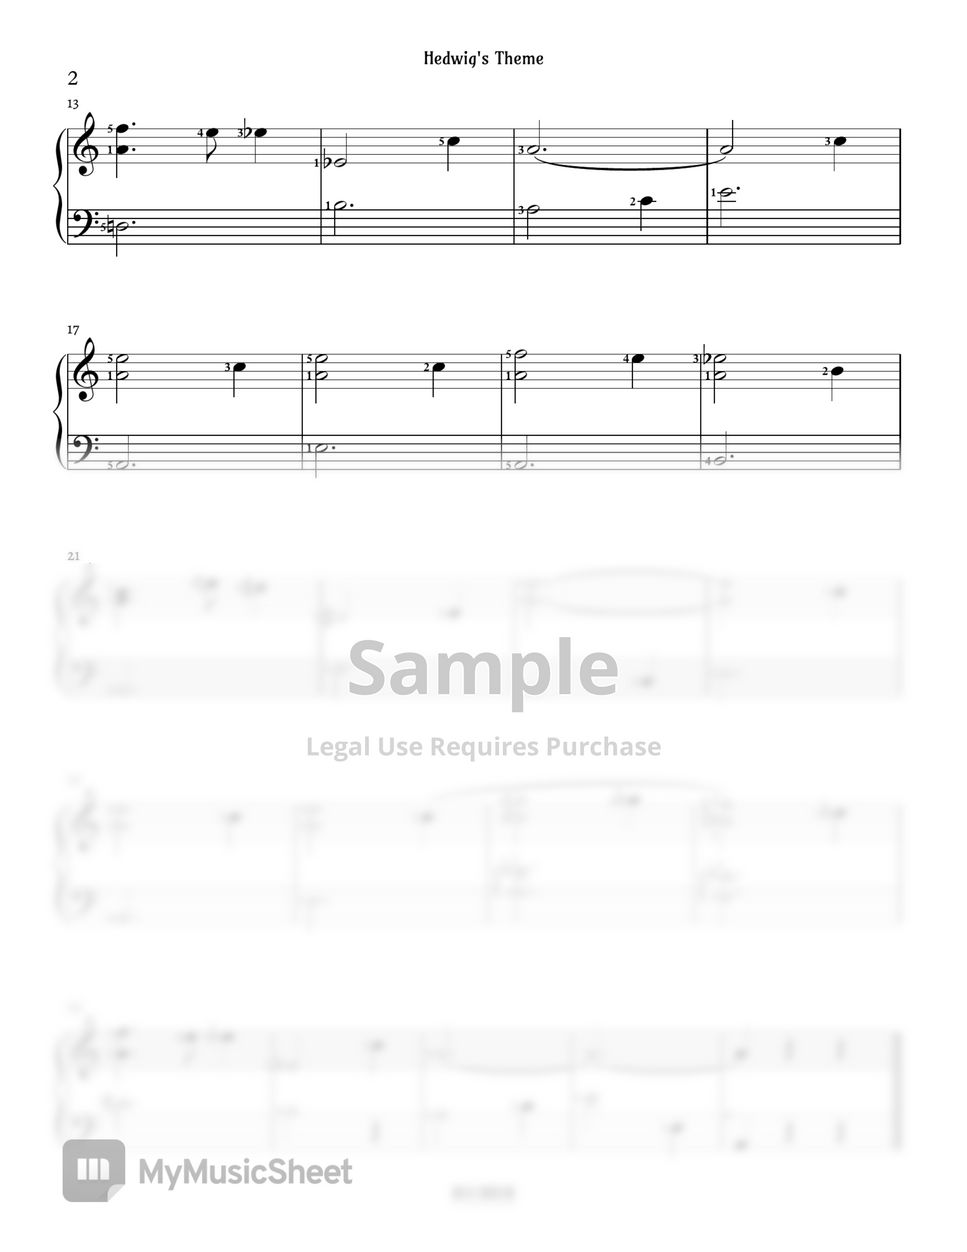 존윌리암스 - [Easy] Hedwig's Theme (해리포터) by PianoSSam